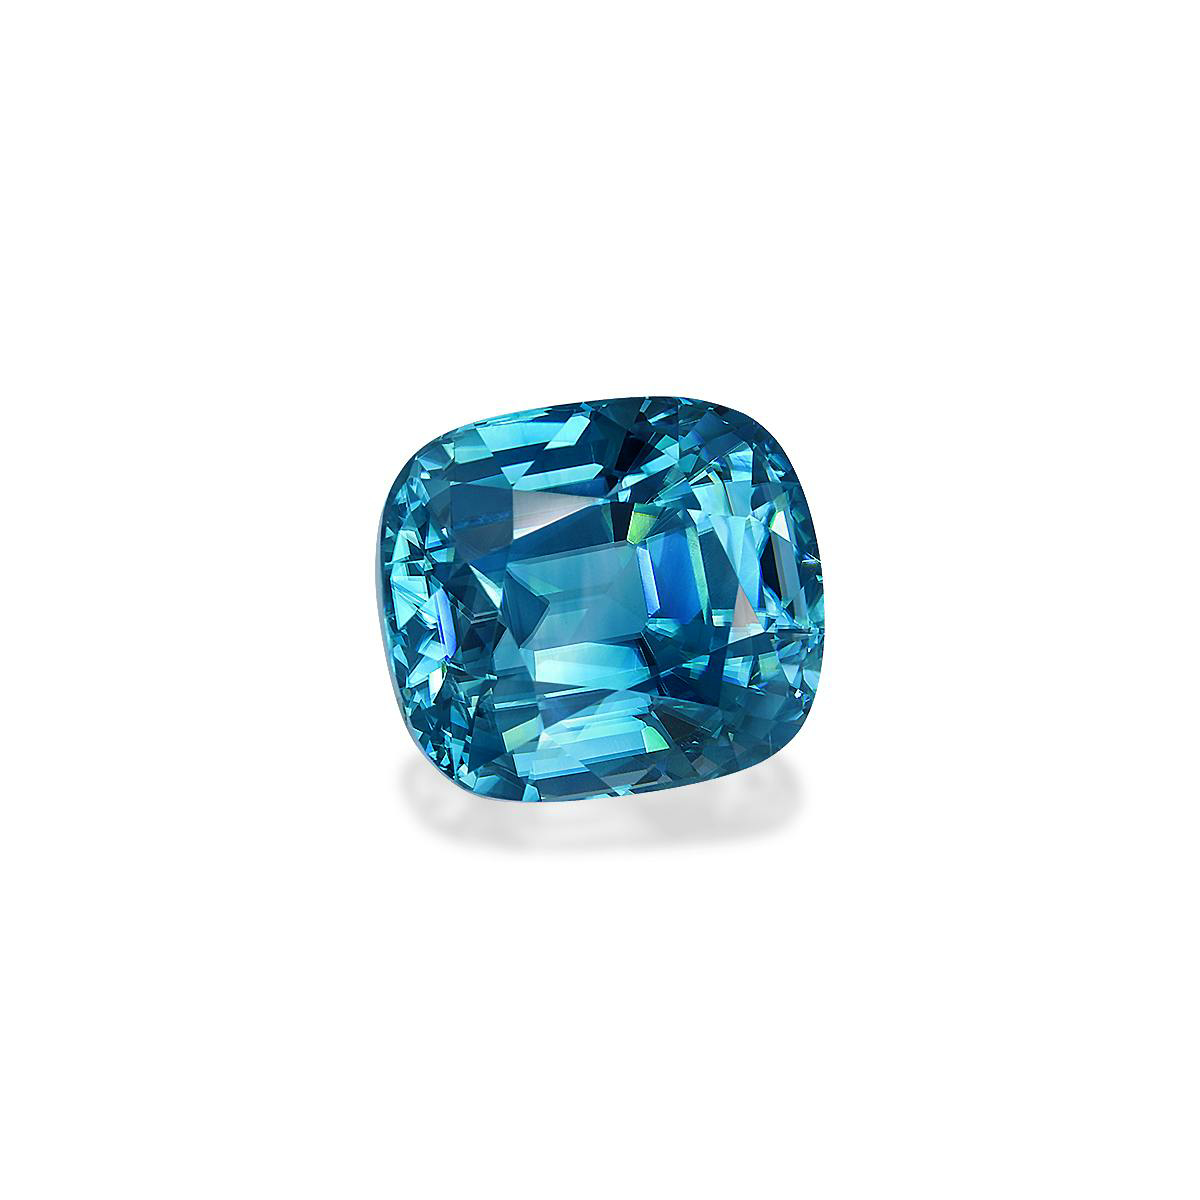 Cobalt Blue Zircon 13.49ct (ZI0796)